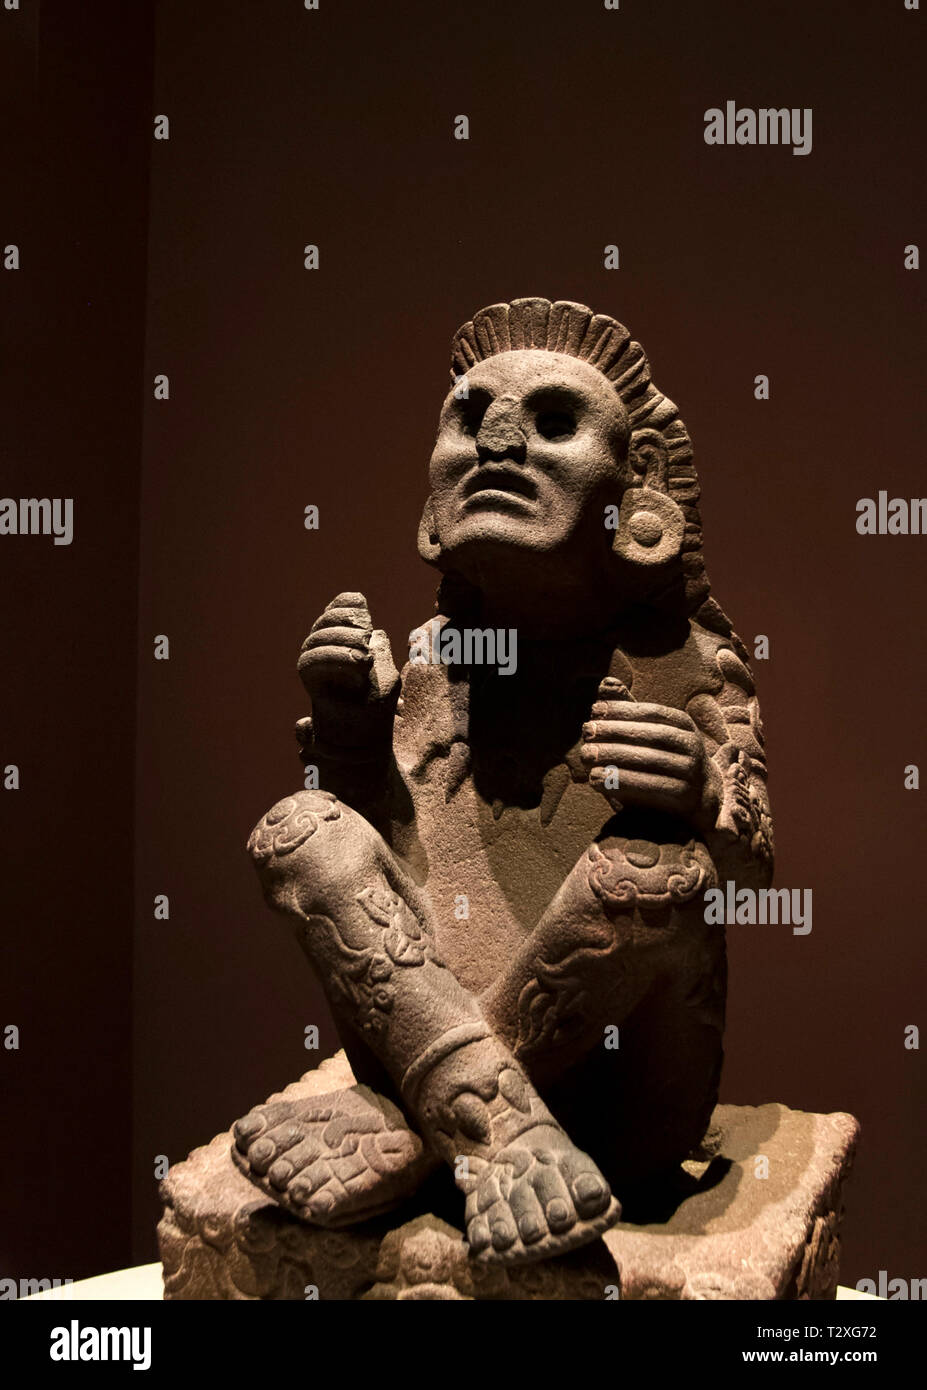 La ville de Mexico : statue en pierre de Xochipilli, dieu de l'art, des jeux, de la beauté, de la danse, les fleurs et le chant dans la mythologie aztèque. Banque D'Images